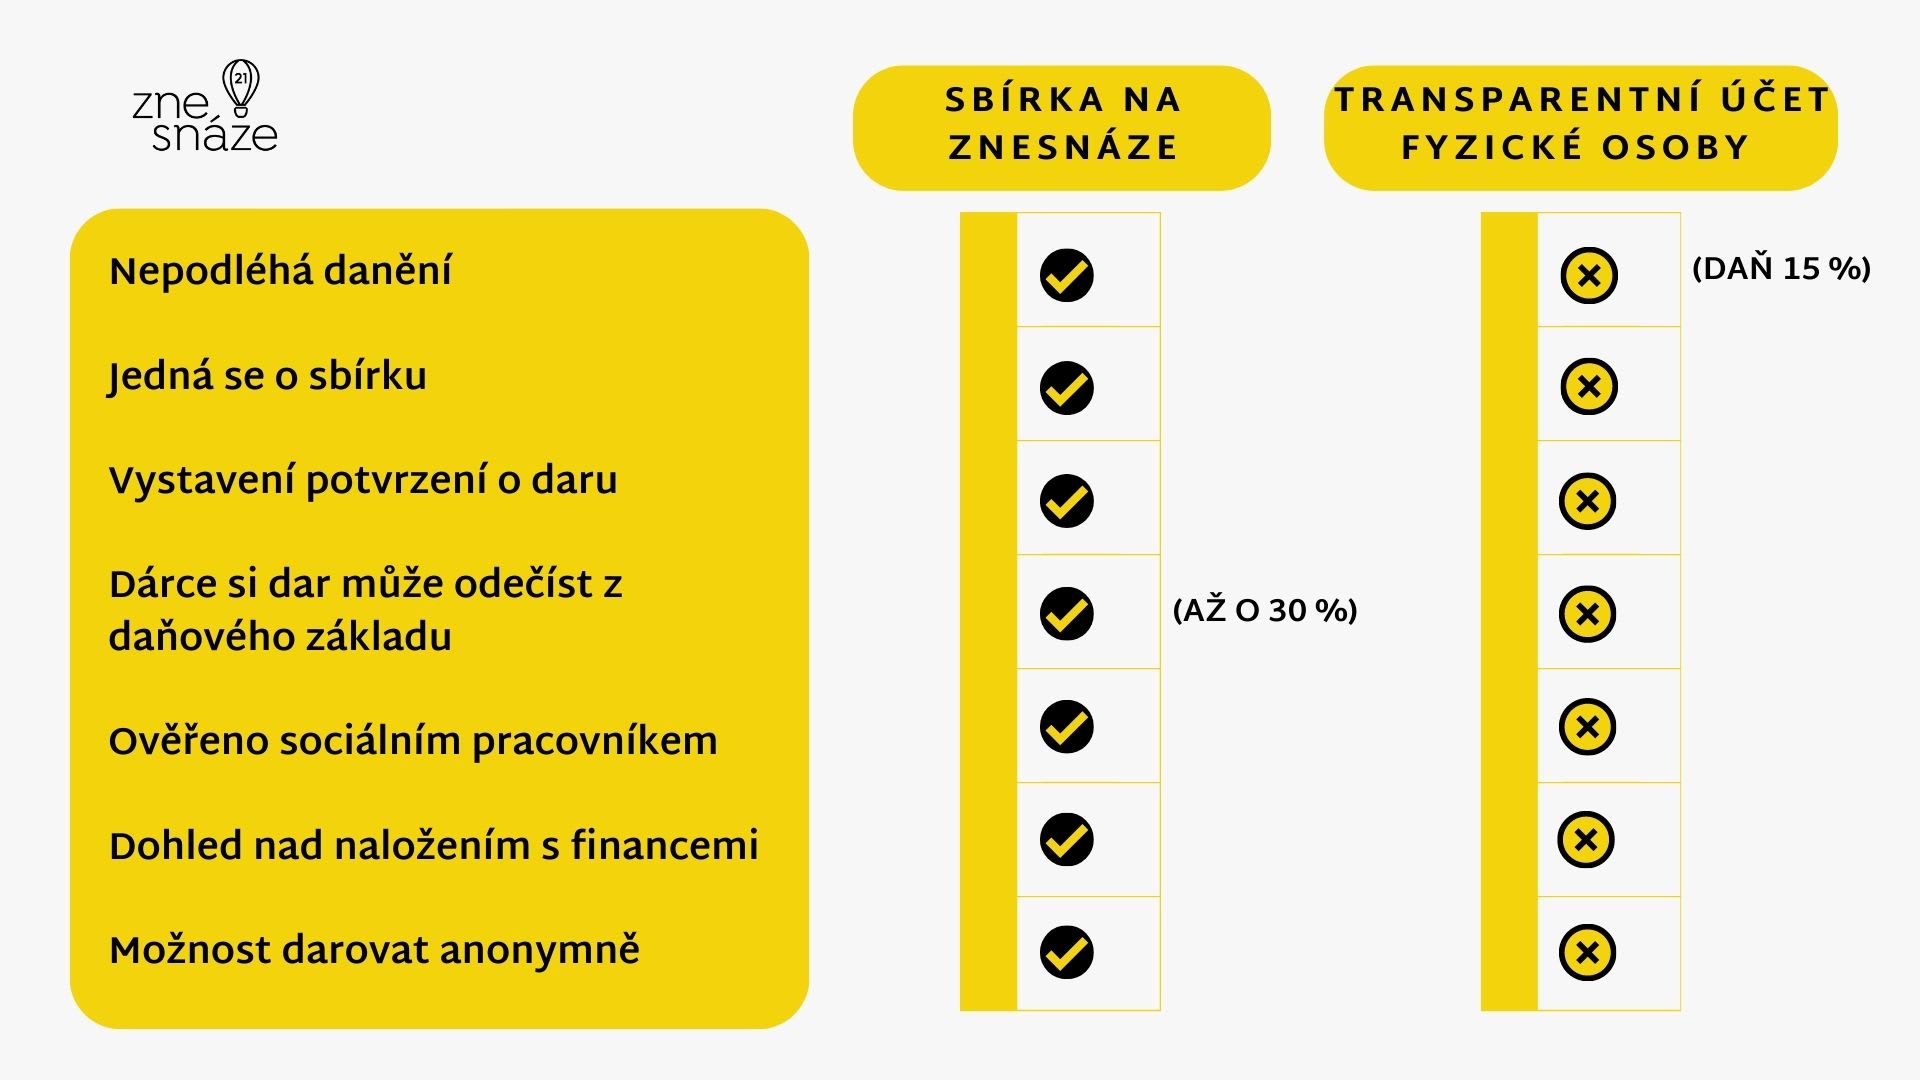 Stručné porovnání sbírky na platformě Znesnáze21 a transparentním účtem fyzické osoby.